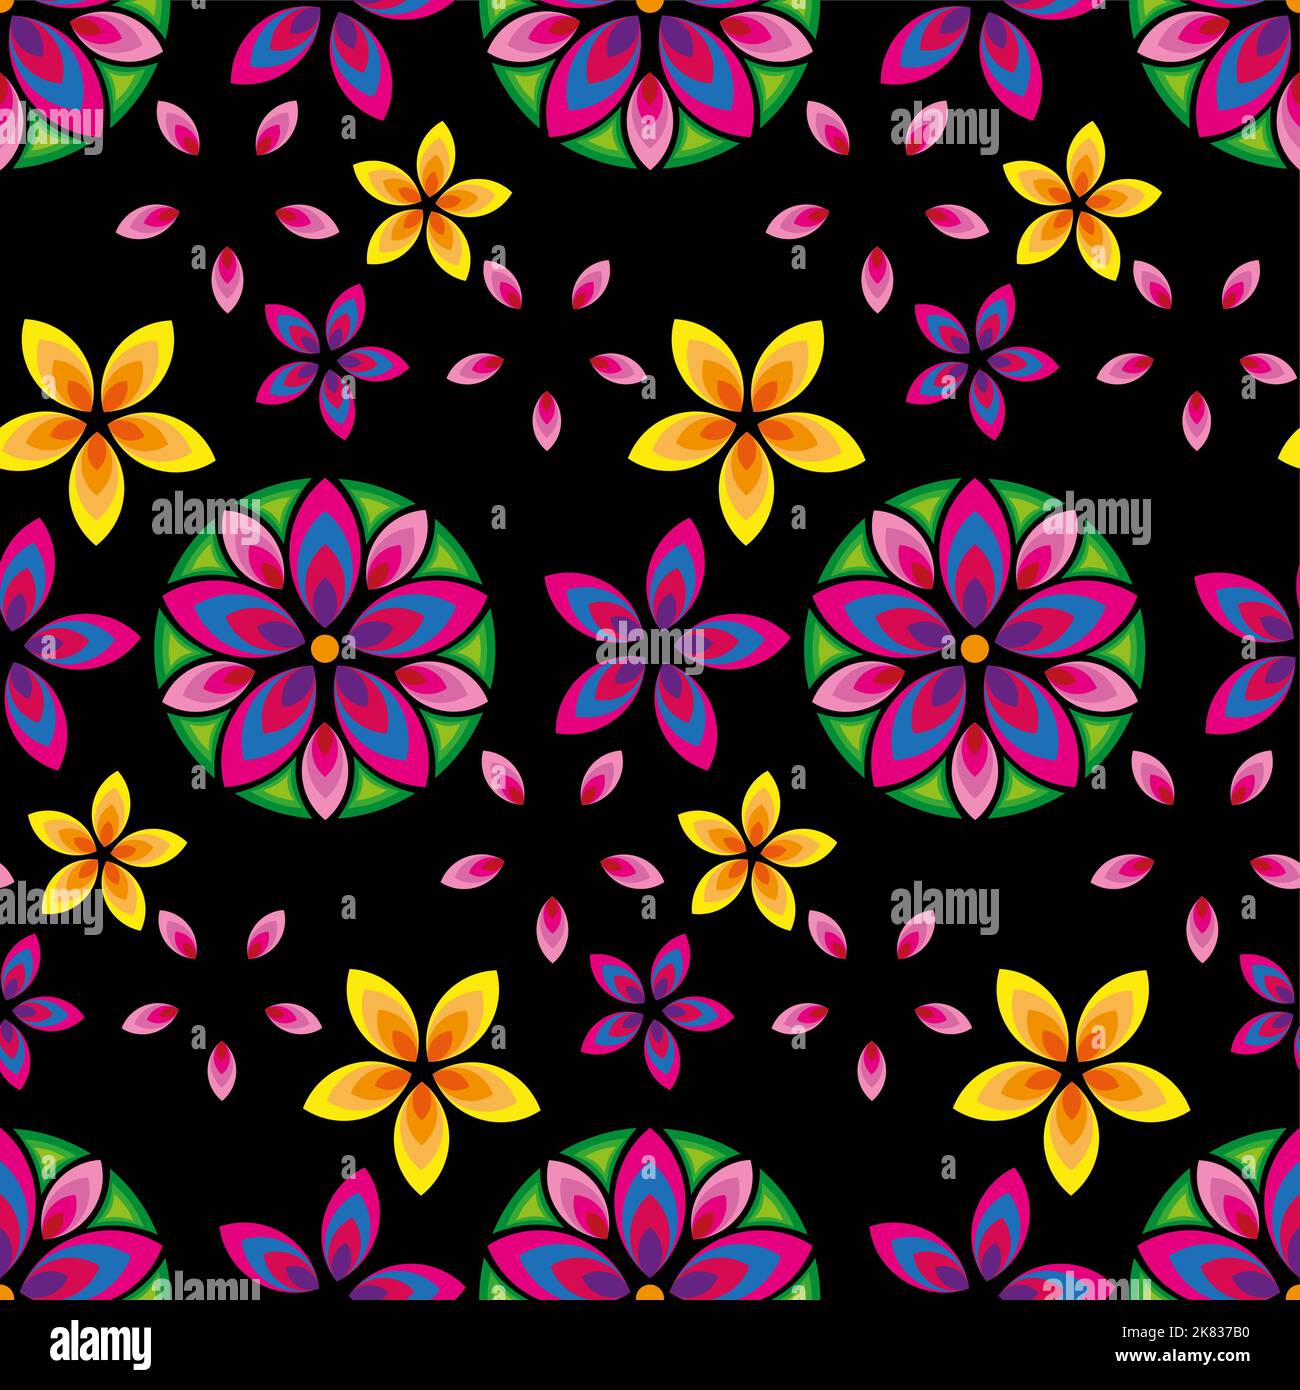 Bunte Blume Mandalas nahtlose Hintergrund. Orientalisches Muster, dekorative Elemente, Vektorgrafik. Islam, Arabisch, Indisch, türkisch, pakistan, ch Stock Vektor